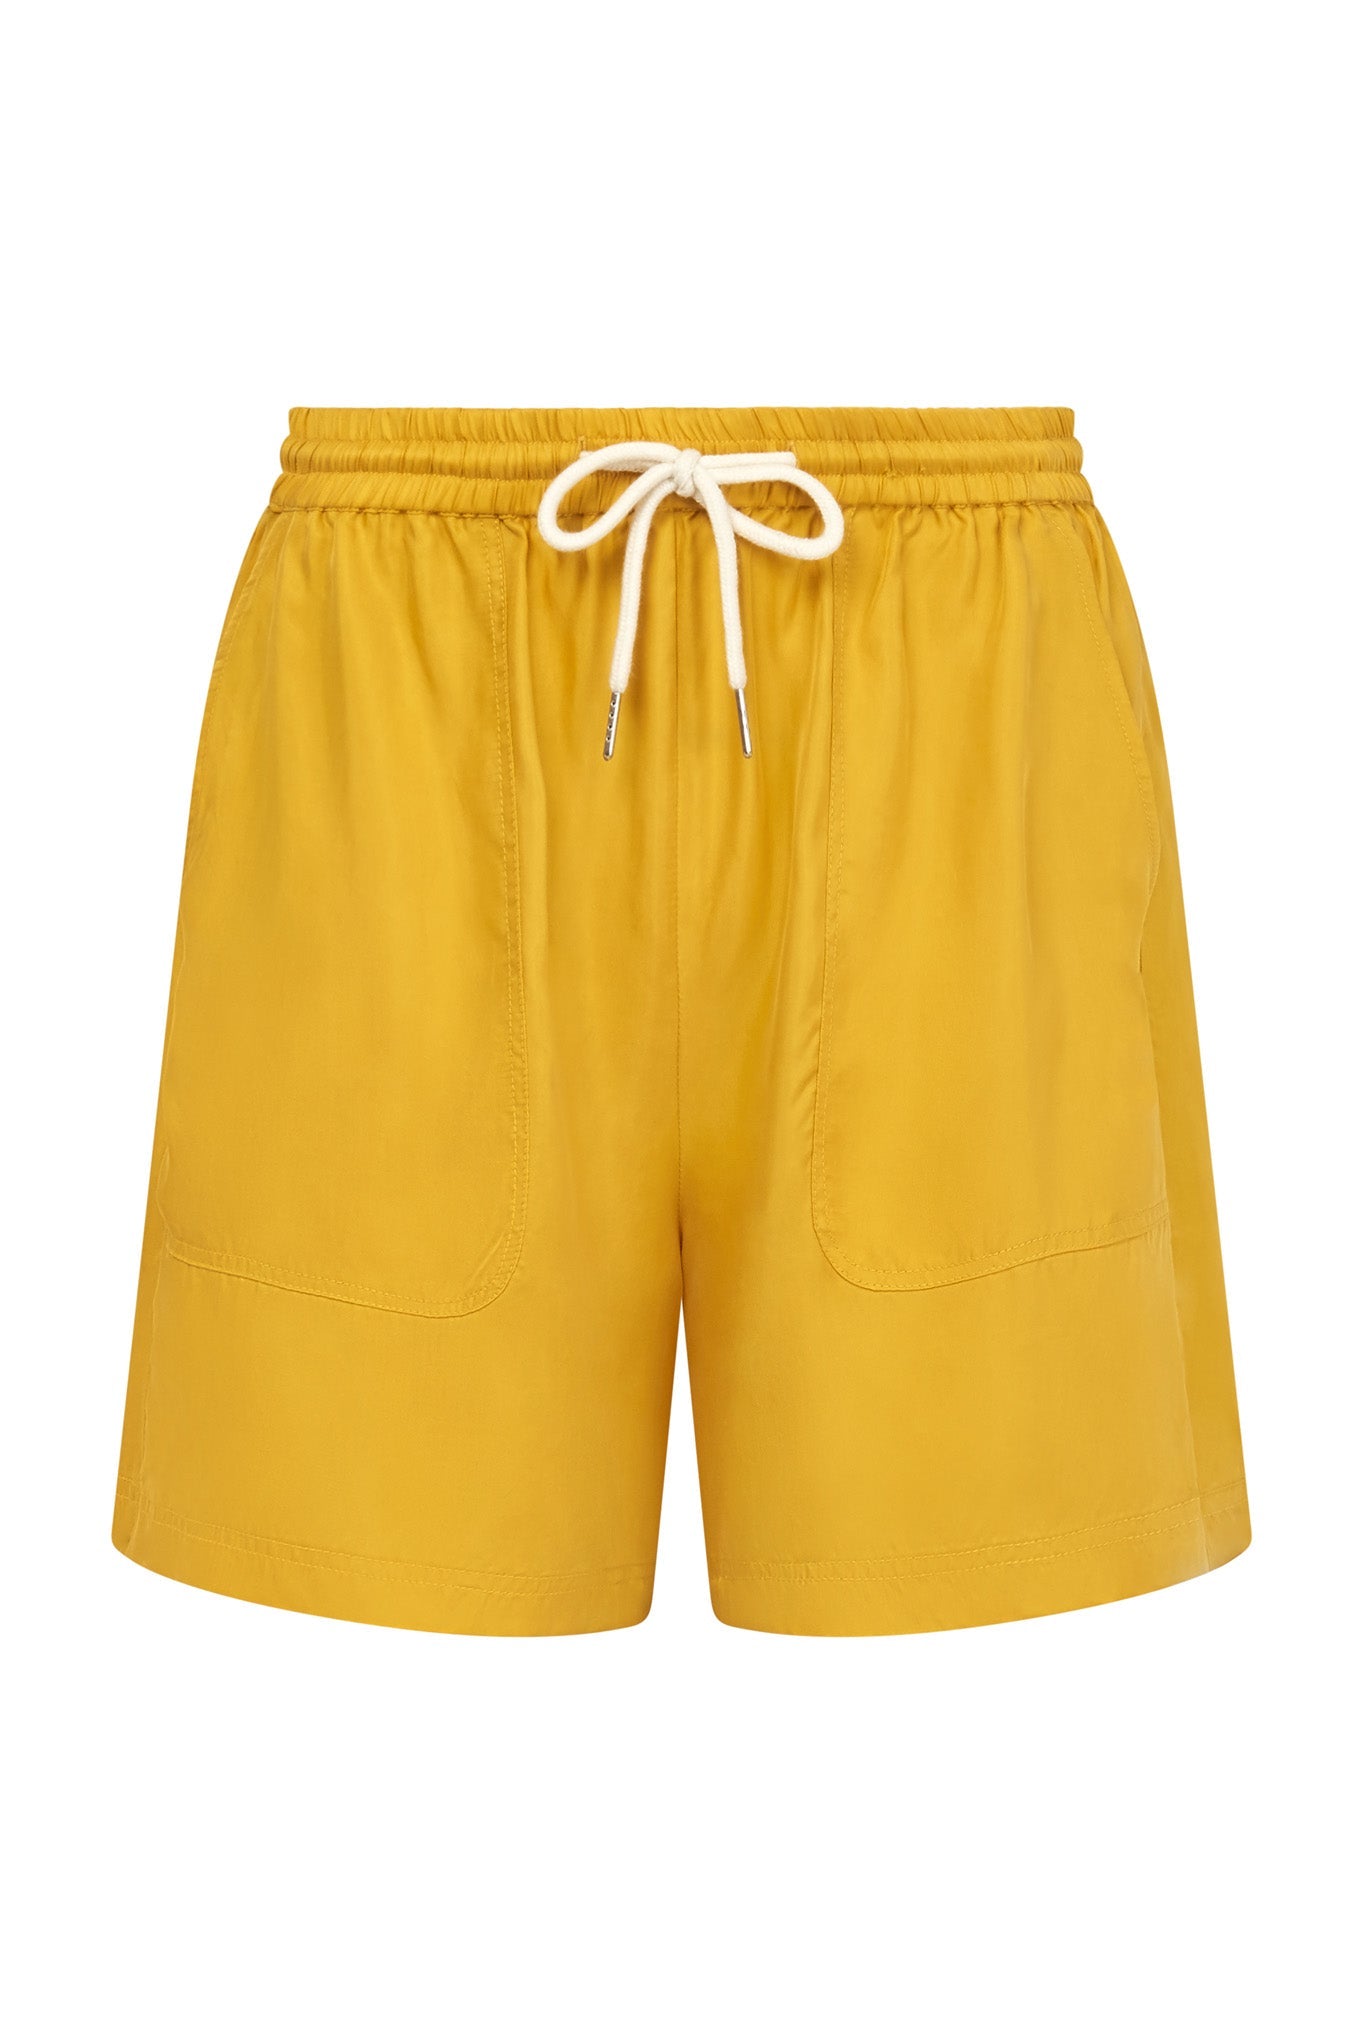 Gelbe Shorts HOLLY aus Cupro und Lenzing von Komodo